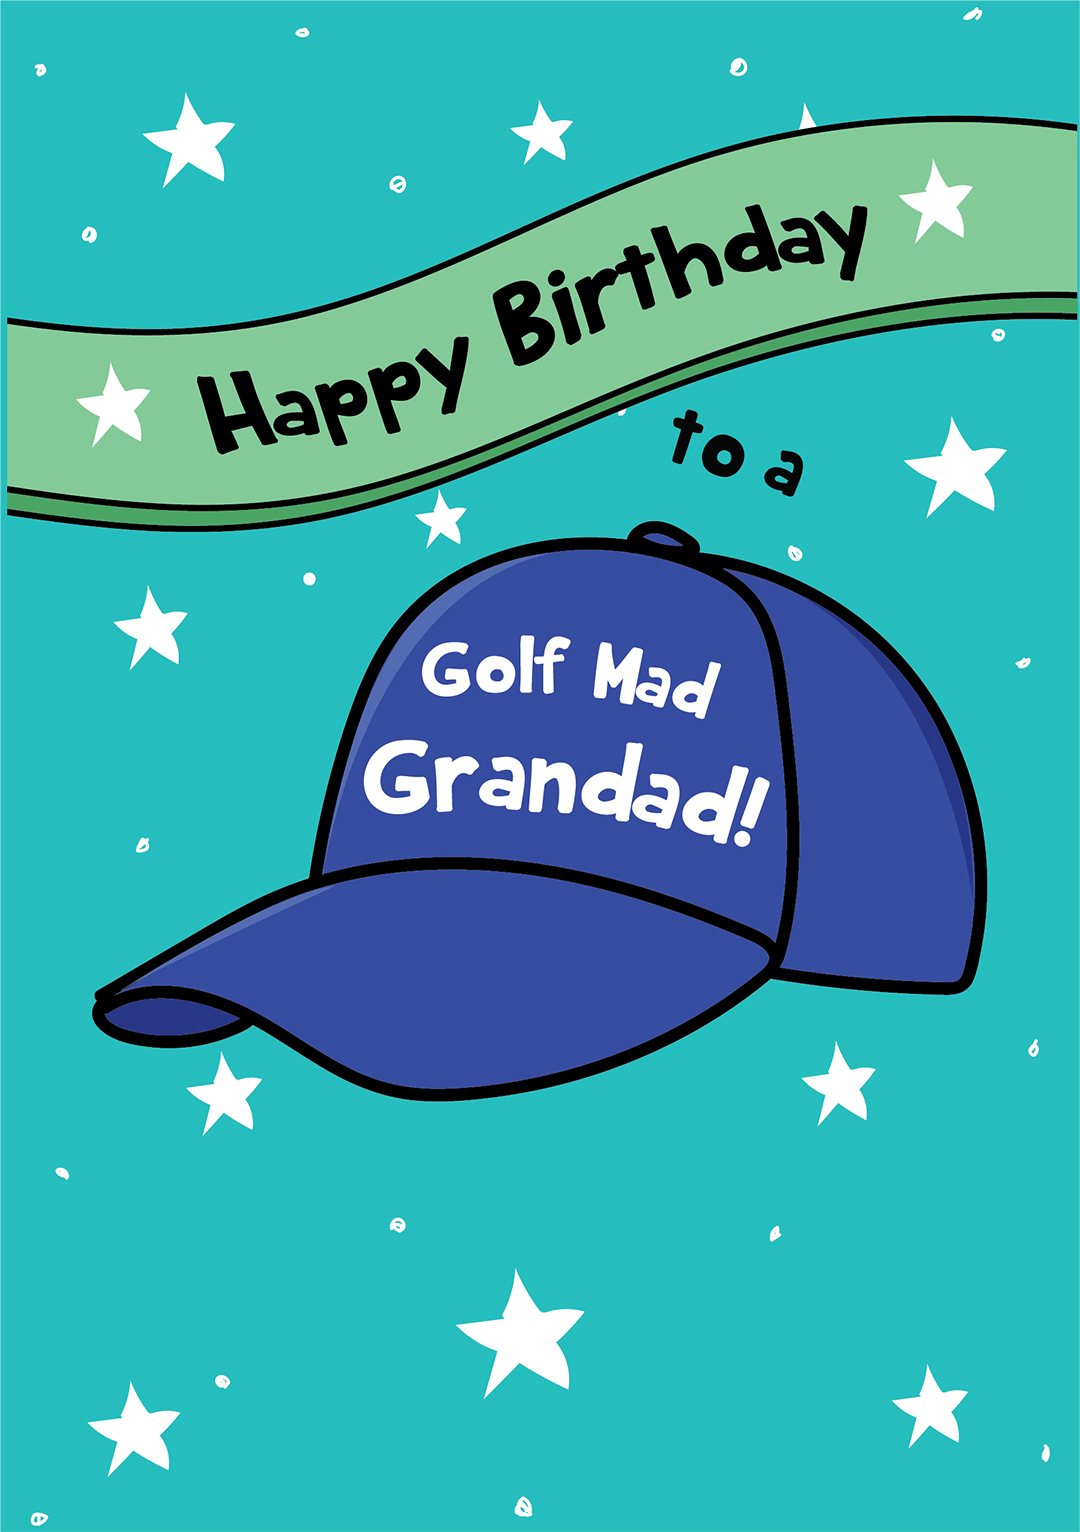 Happy Birthday To A Golf Mad Grandad!